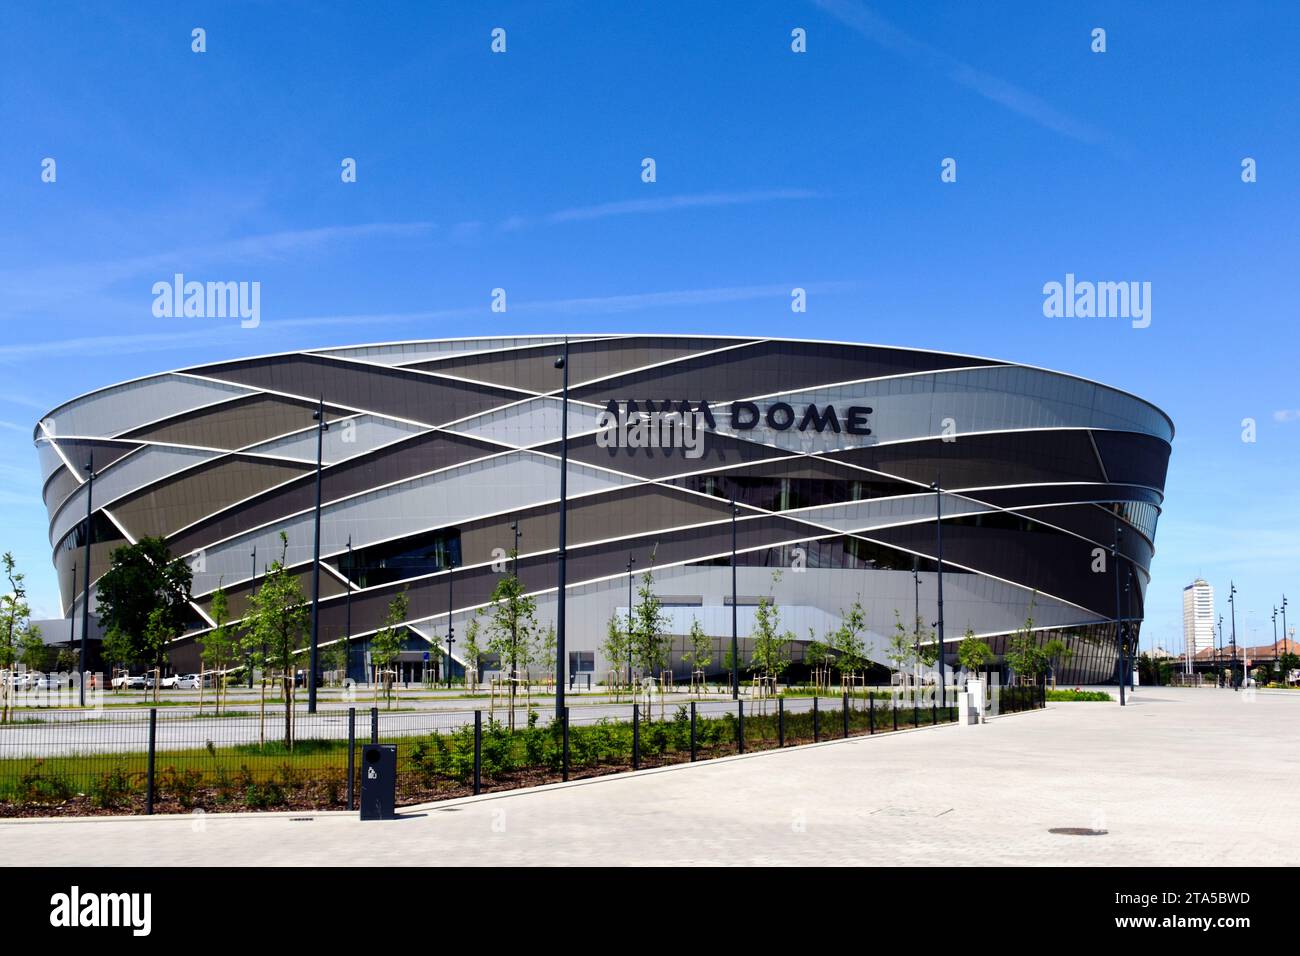 Die MVM-Sportarena und das Stadion außen in Budapest, Ungarn. Neue Leichtathletikanlage. Moderne Architektur. Glas- und Aluminiumverkleidung Stockfoto